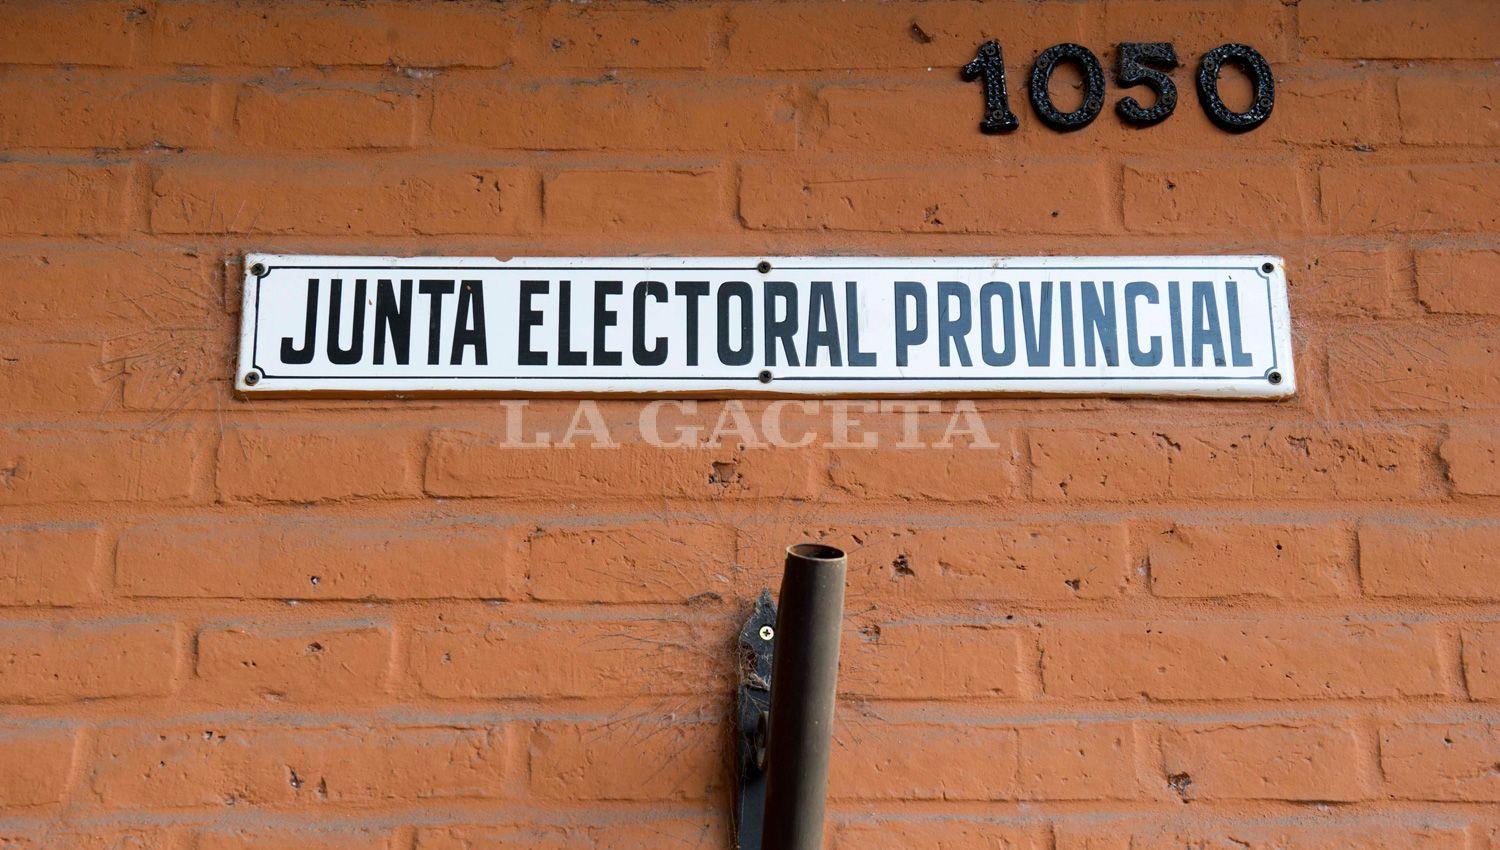 Junta Electoral Provincial (JEP)